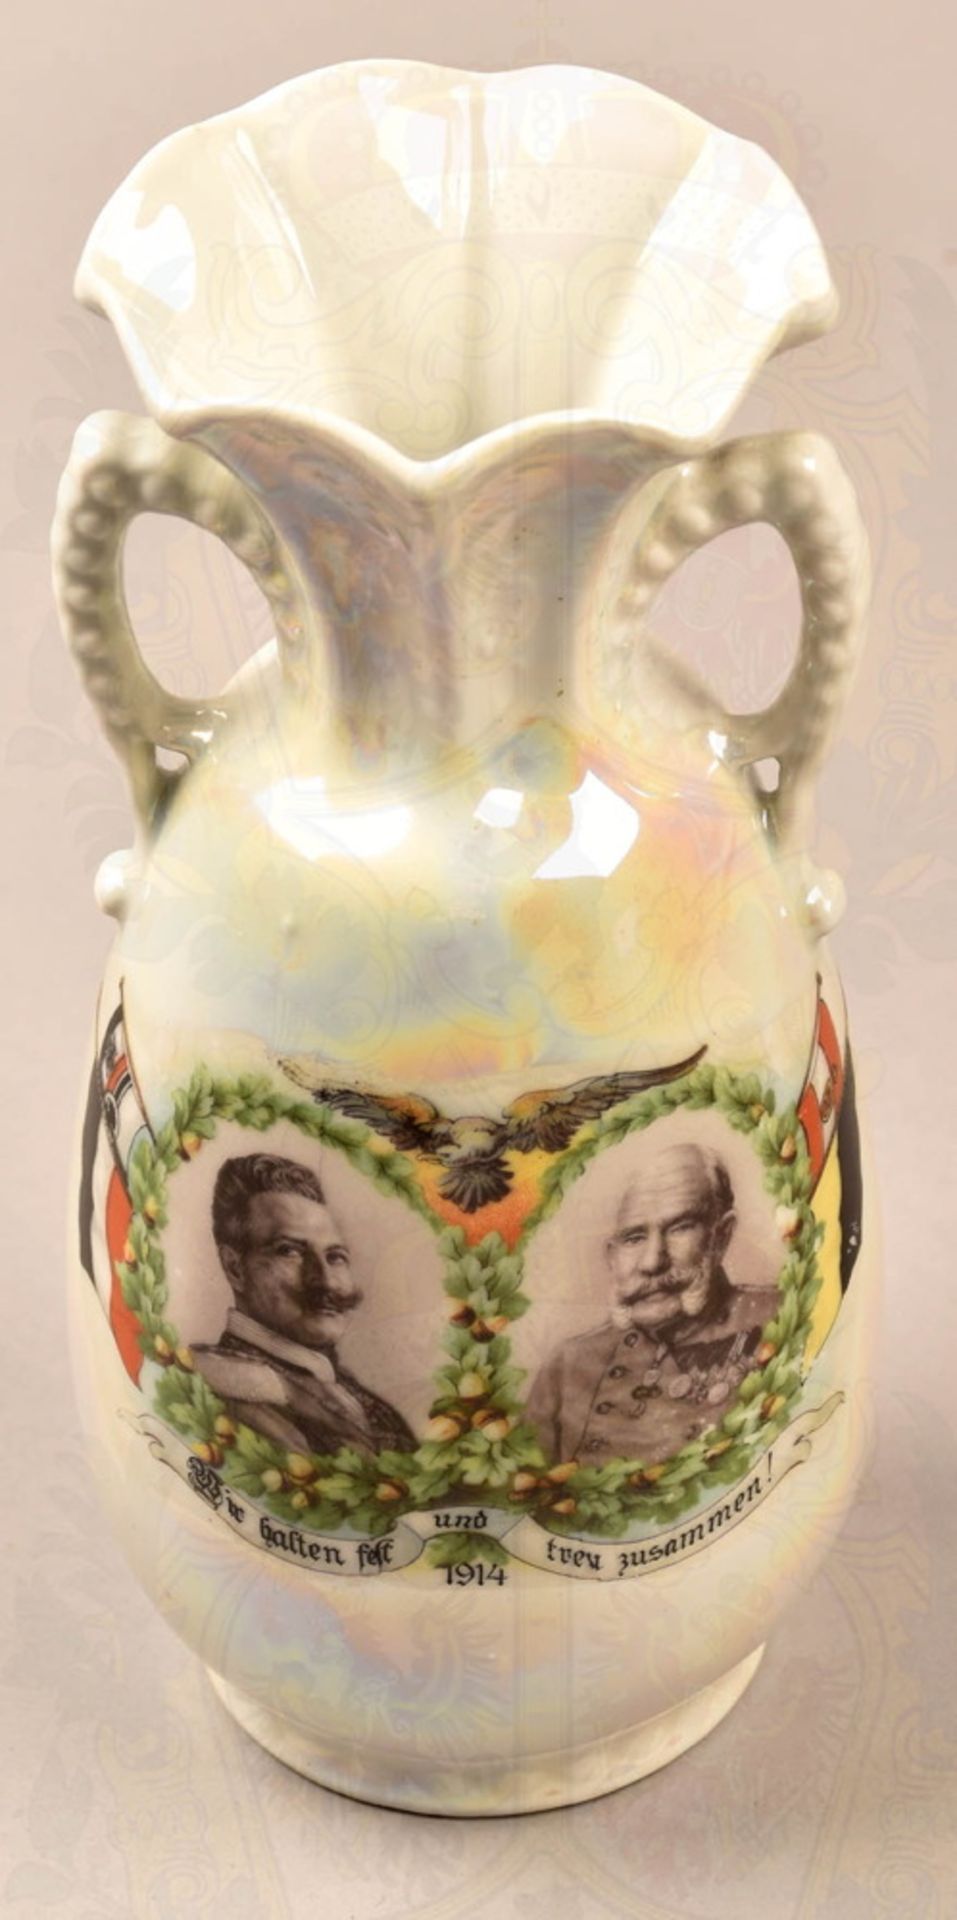 Patriotic flower vase 1914